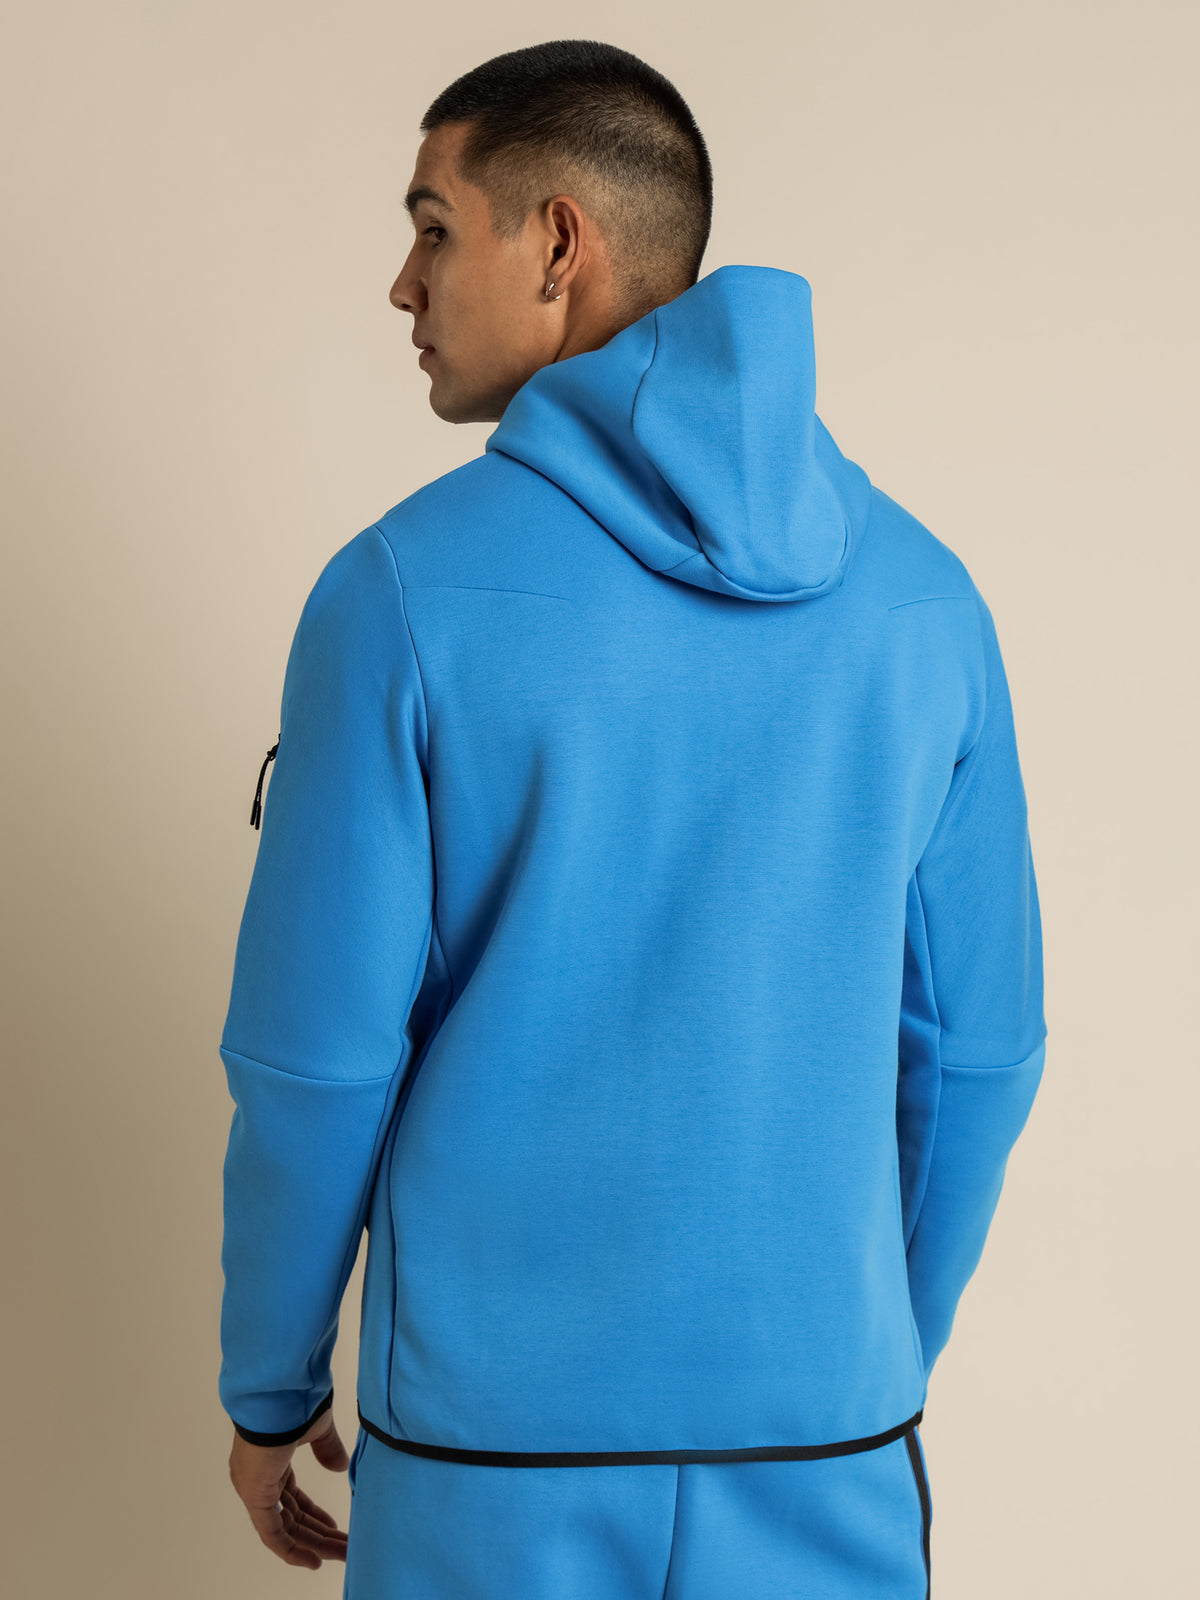 Tech Fleece Hooded Jacket in Photo Blue